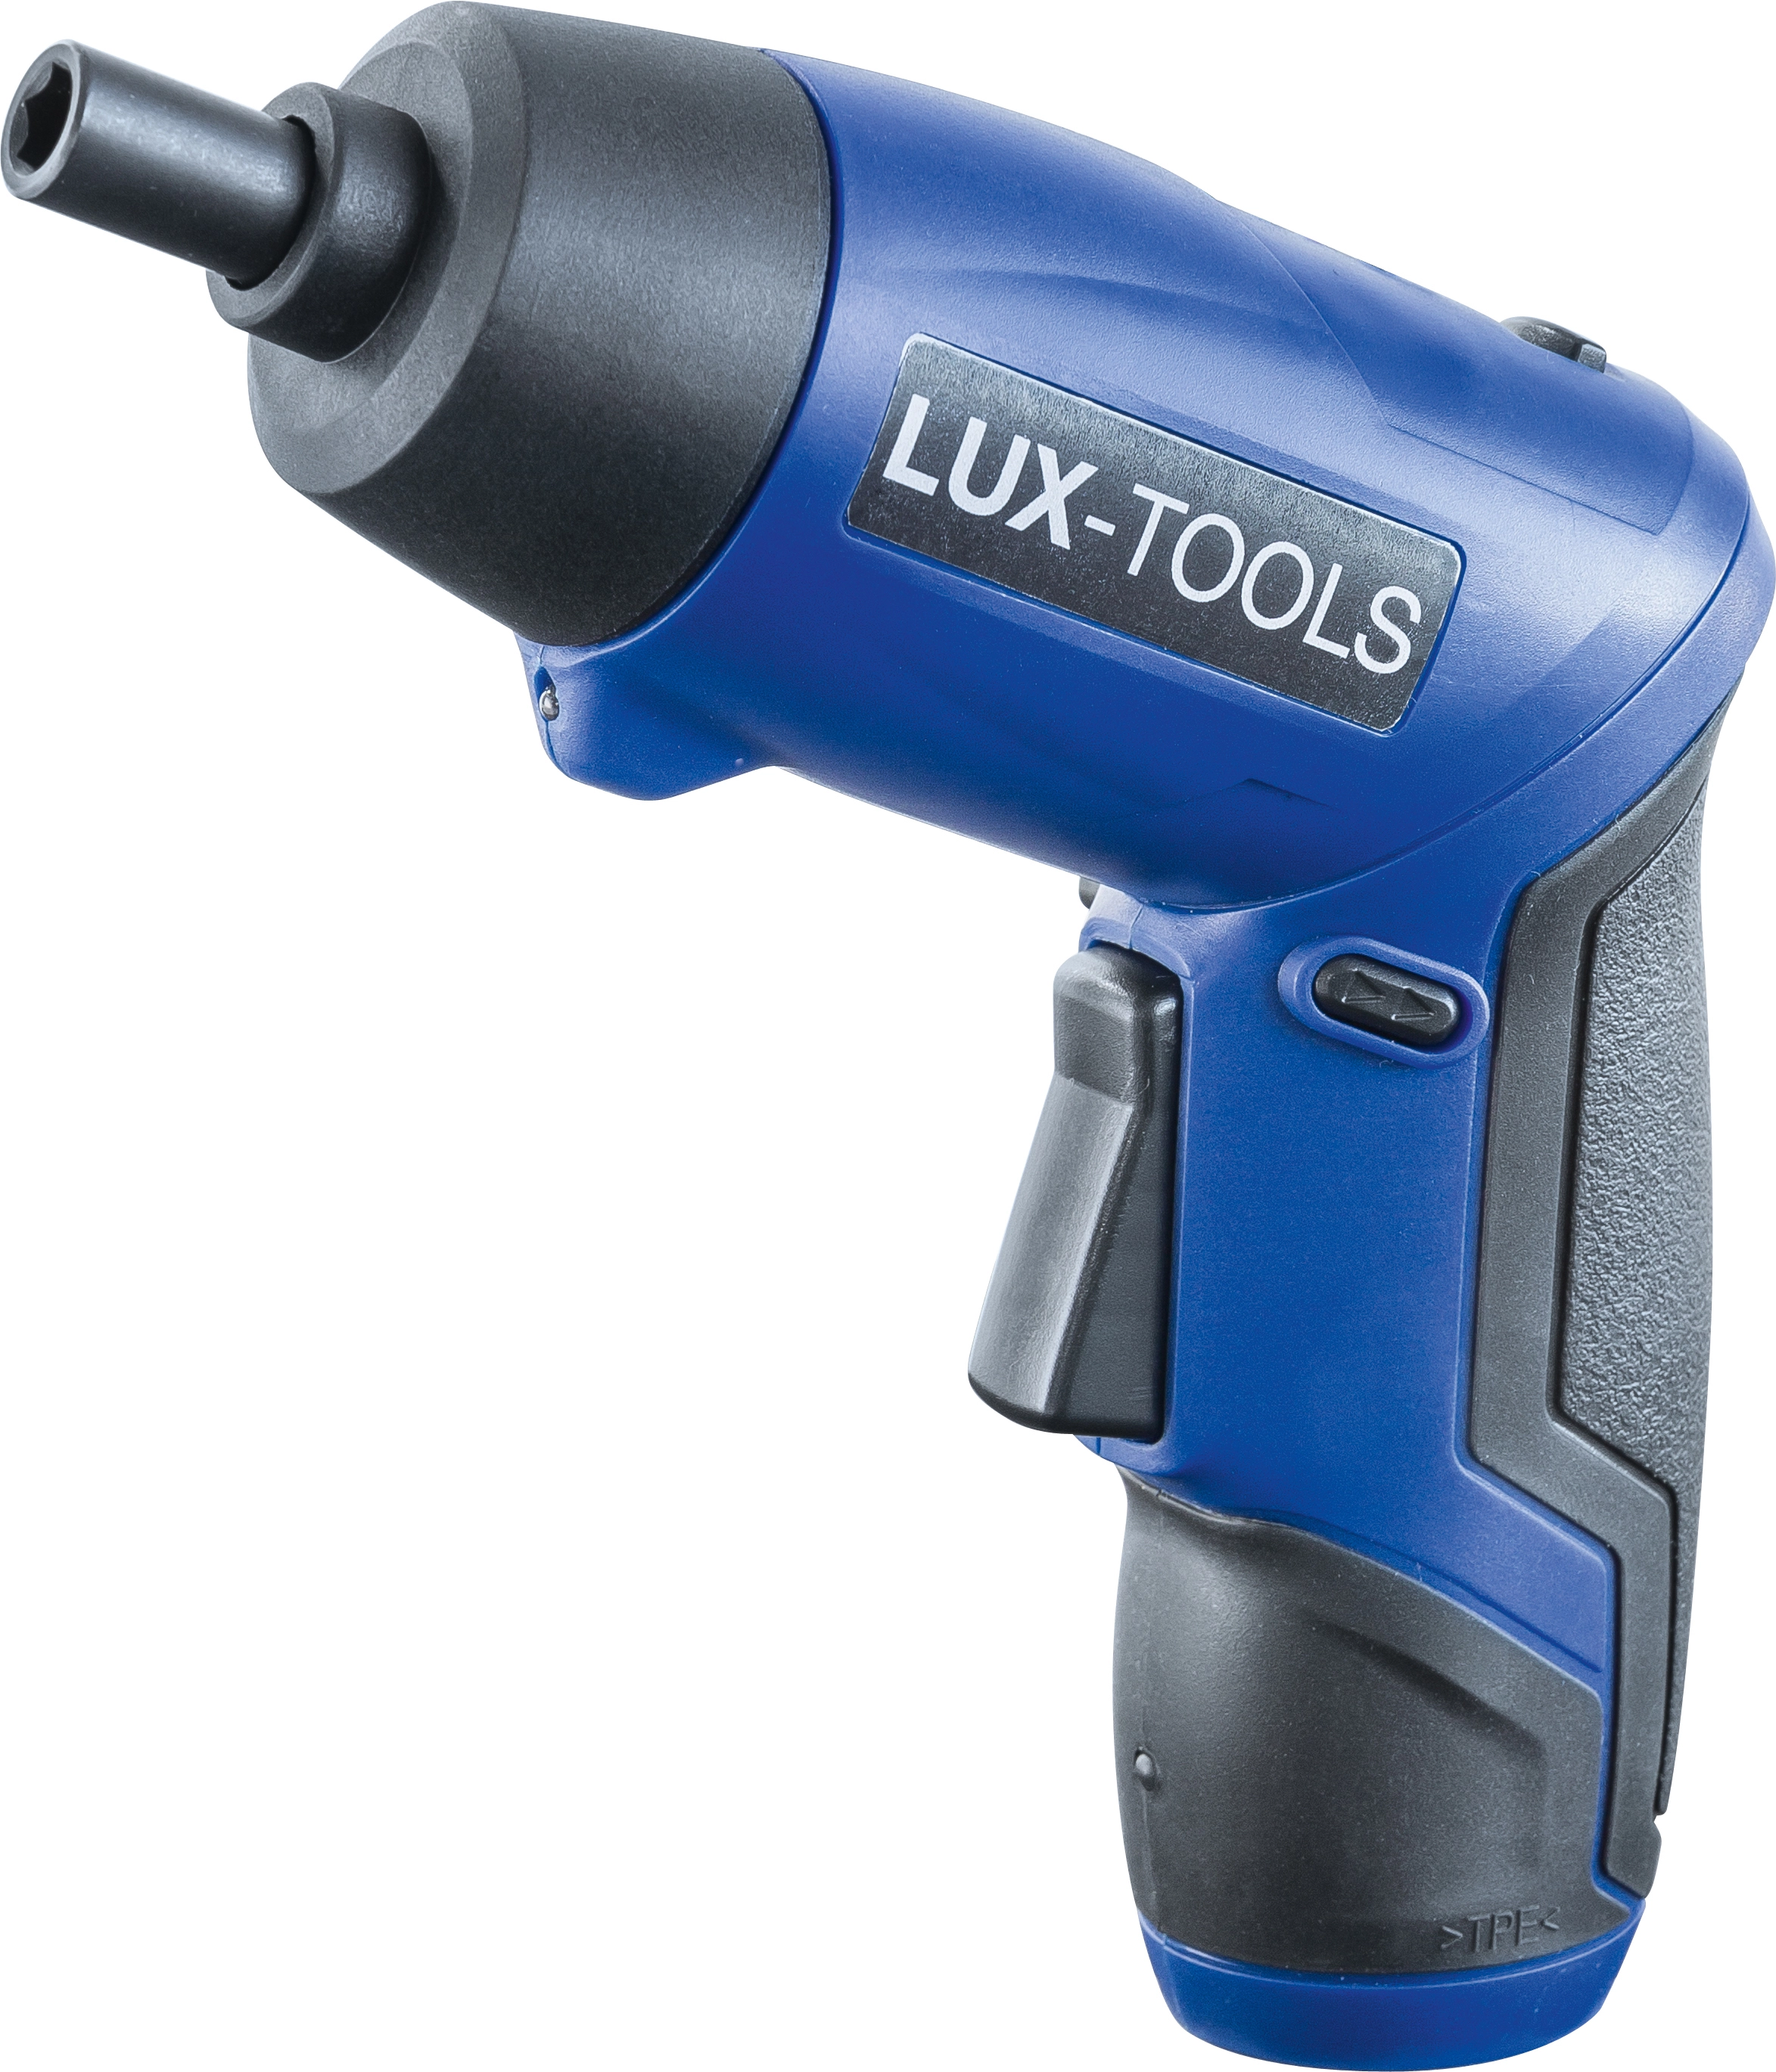 Lux tools аккумуляторная. Аккумуляторная отвертка Lux-Tools ABS-3,6li. Шуруповерт Lux аккумуляторный 3.6. Lux Tools шуруповерт. Электроотвертка Lux Tools.